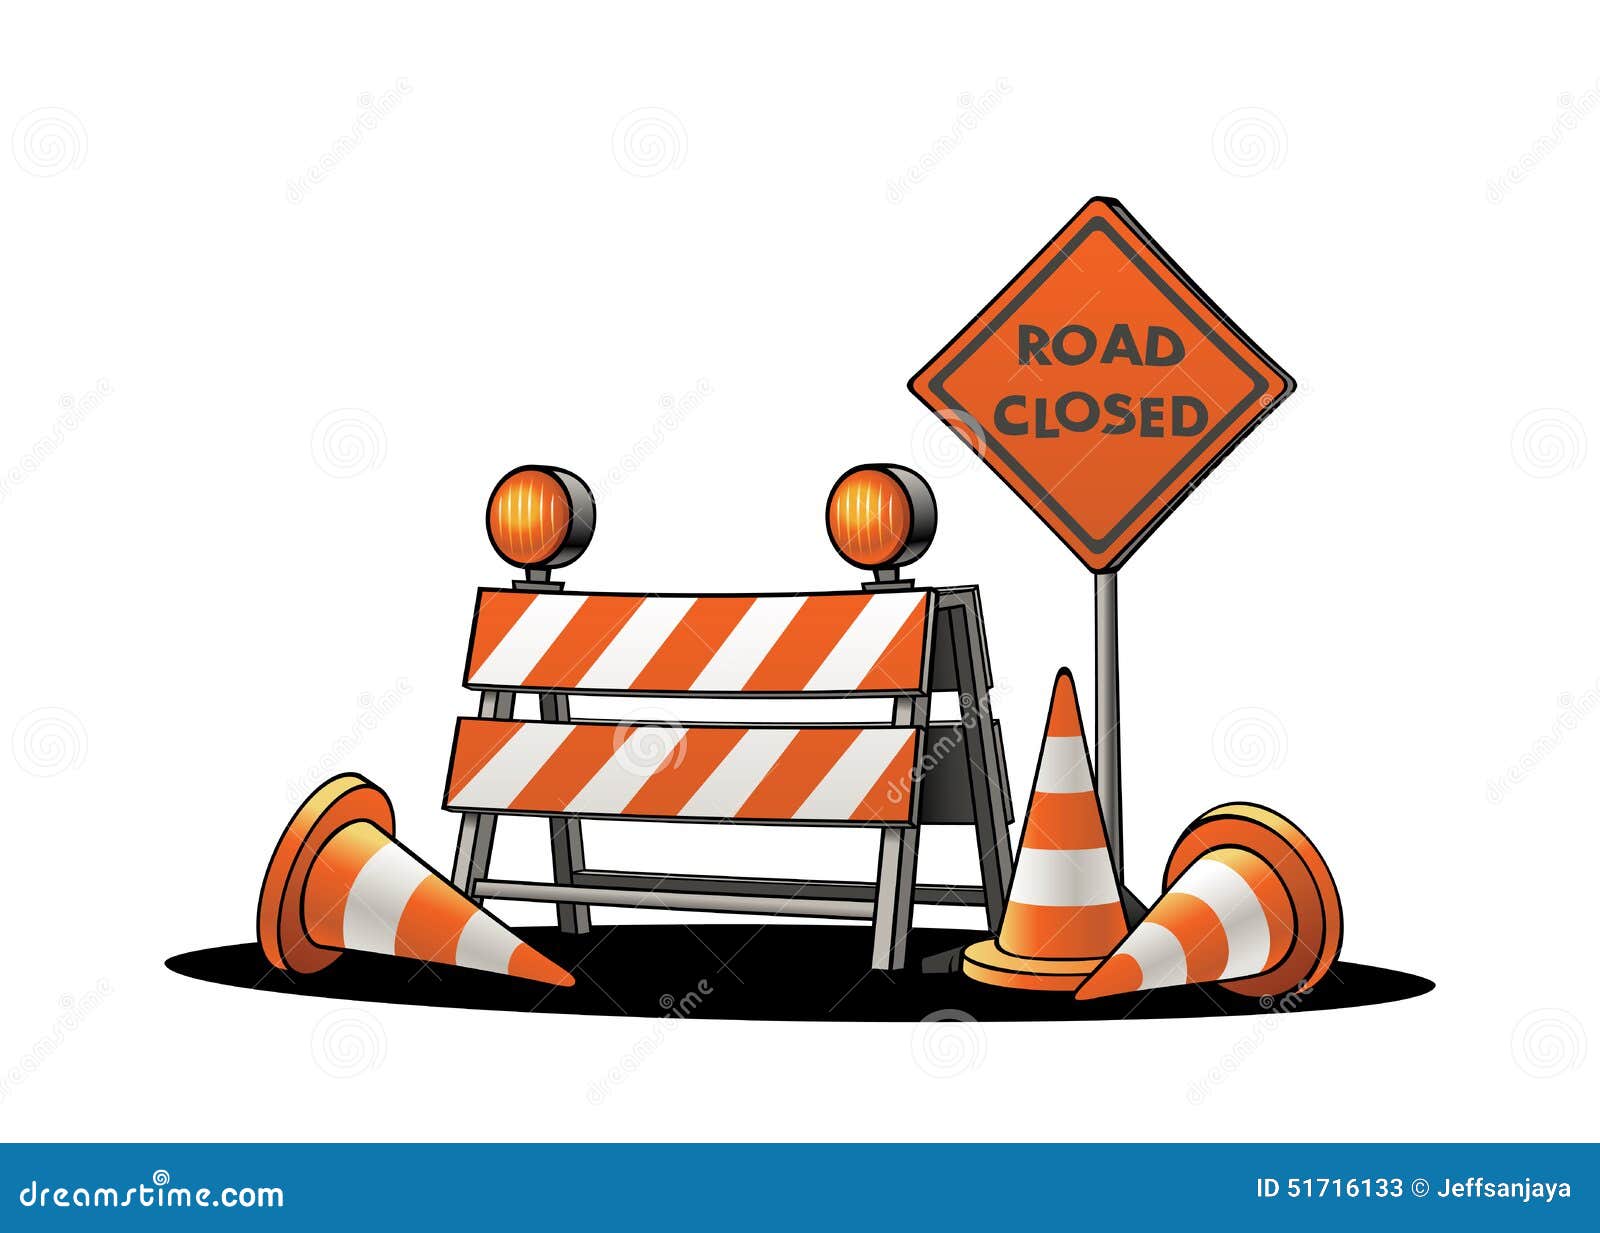 Traffic Warning Signs stock vector. Illustration of roadblock - 51716133